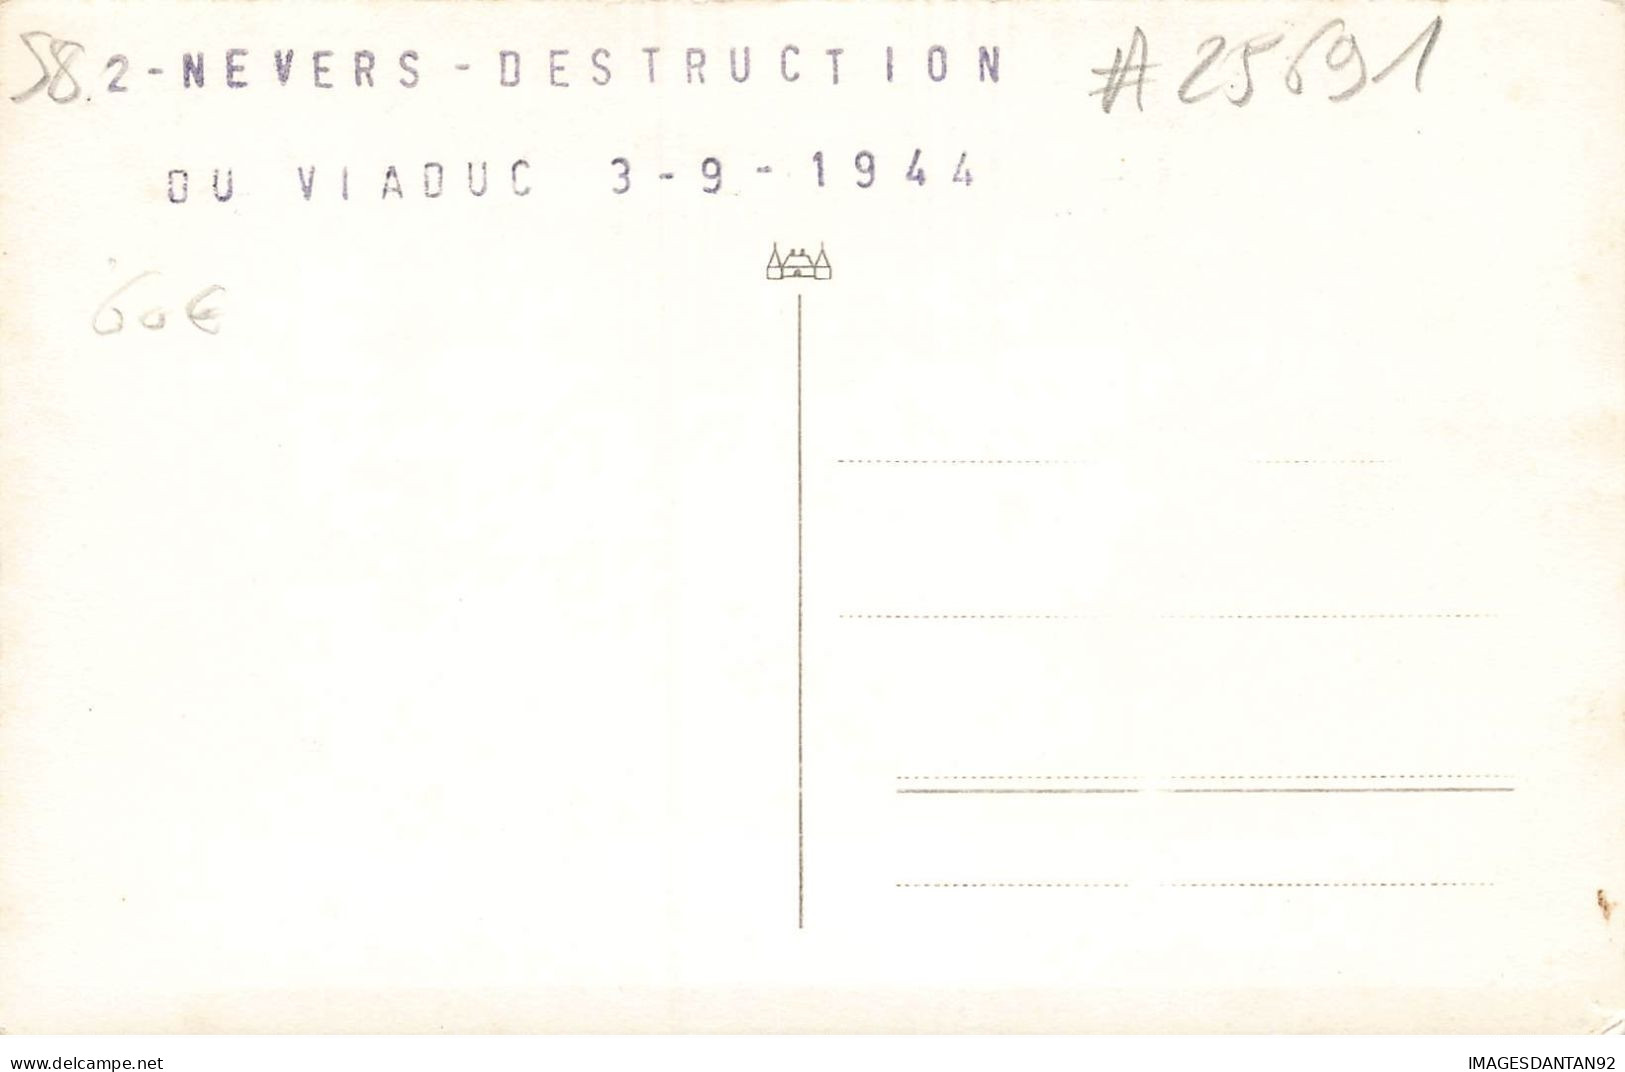 58 NEVERS 25691 DESTRUCTION DU VIADUC LE 3 SEPTEMBRE 1944 CARTE PHOTO - Nevers